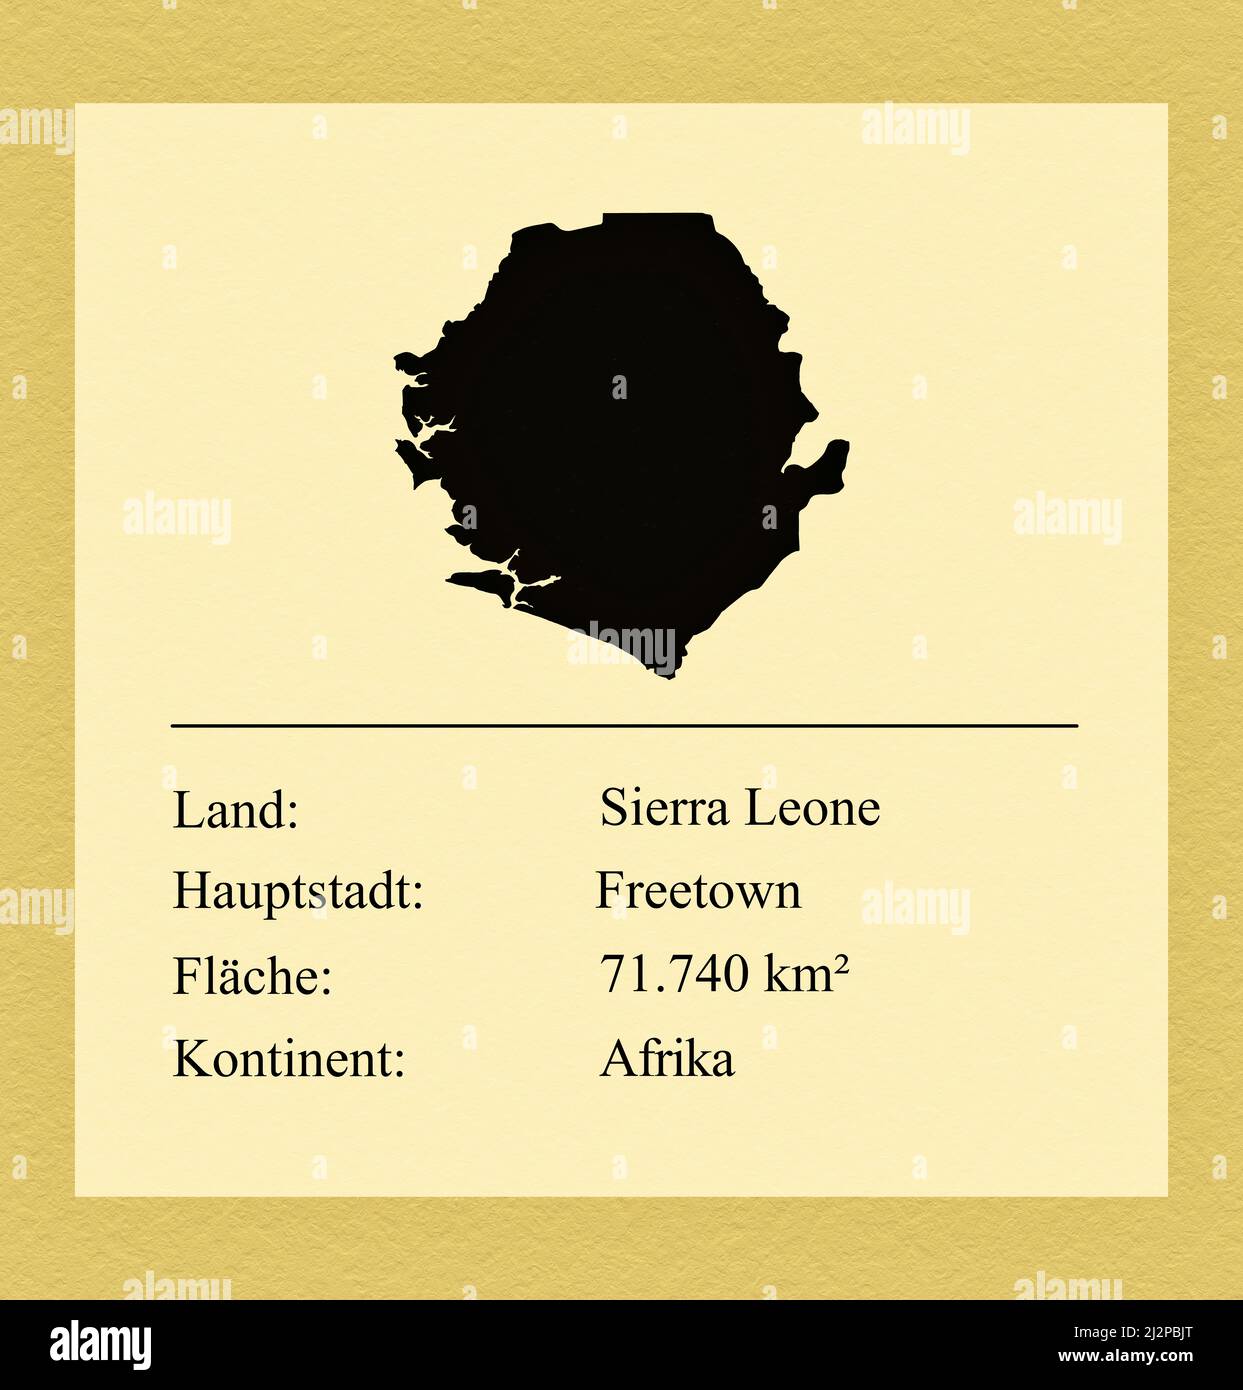 Umrisse des Landes Sierra Leone, darunter ein kleiner Steckbrief mit Ländernamen, Hauptstadt, Fläche und Kontinent Foto Stock